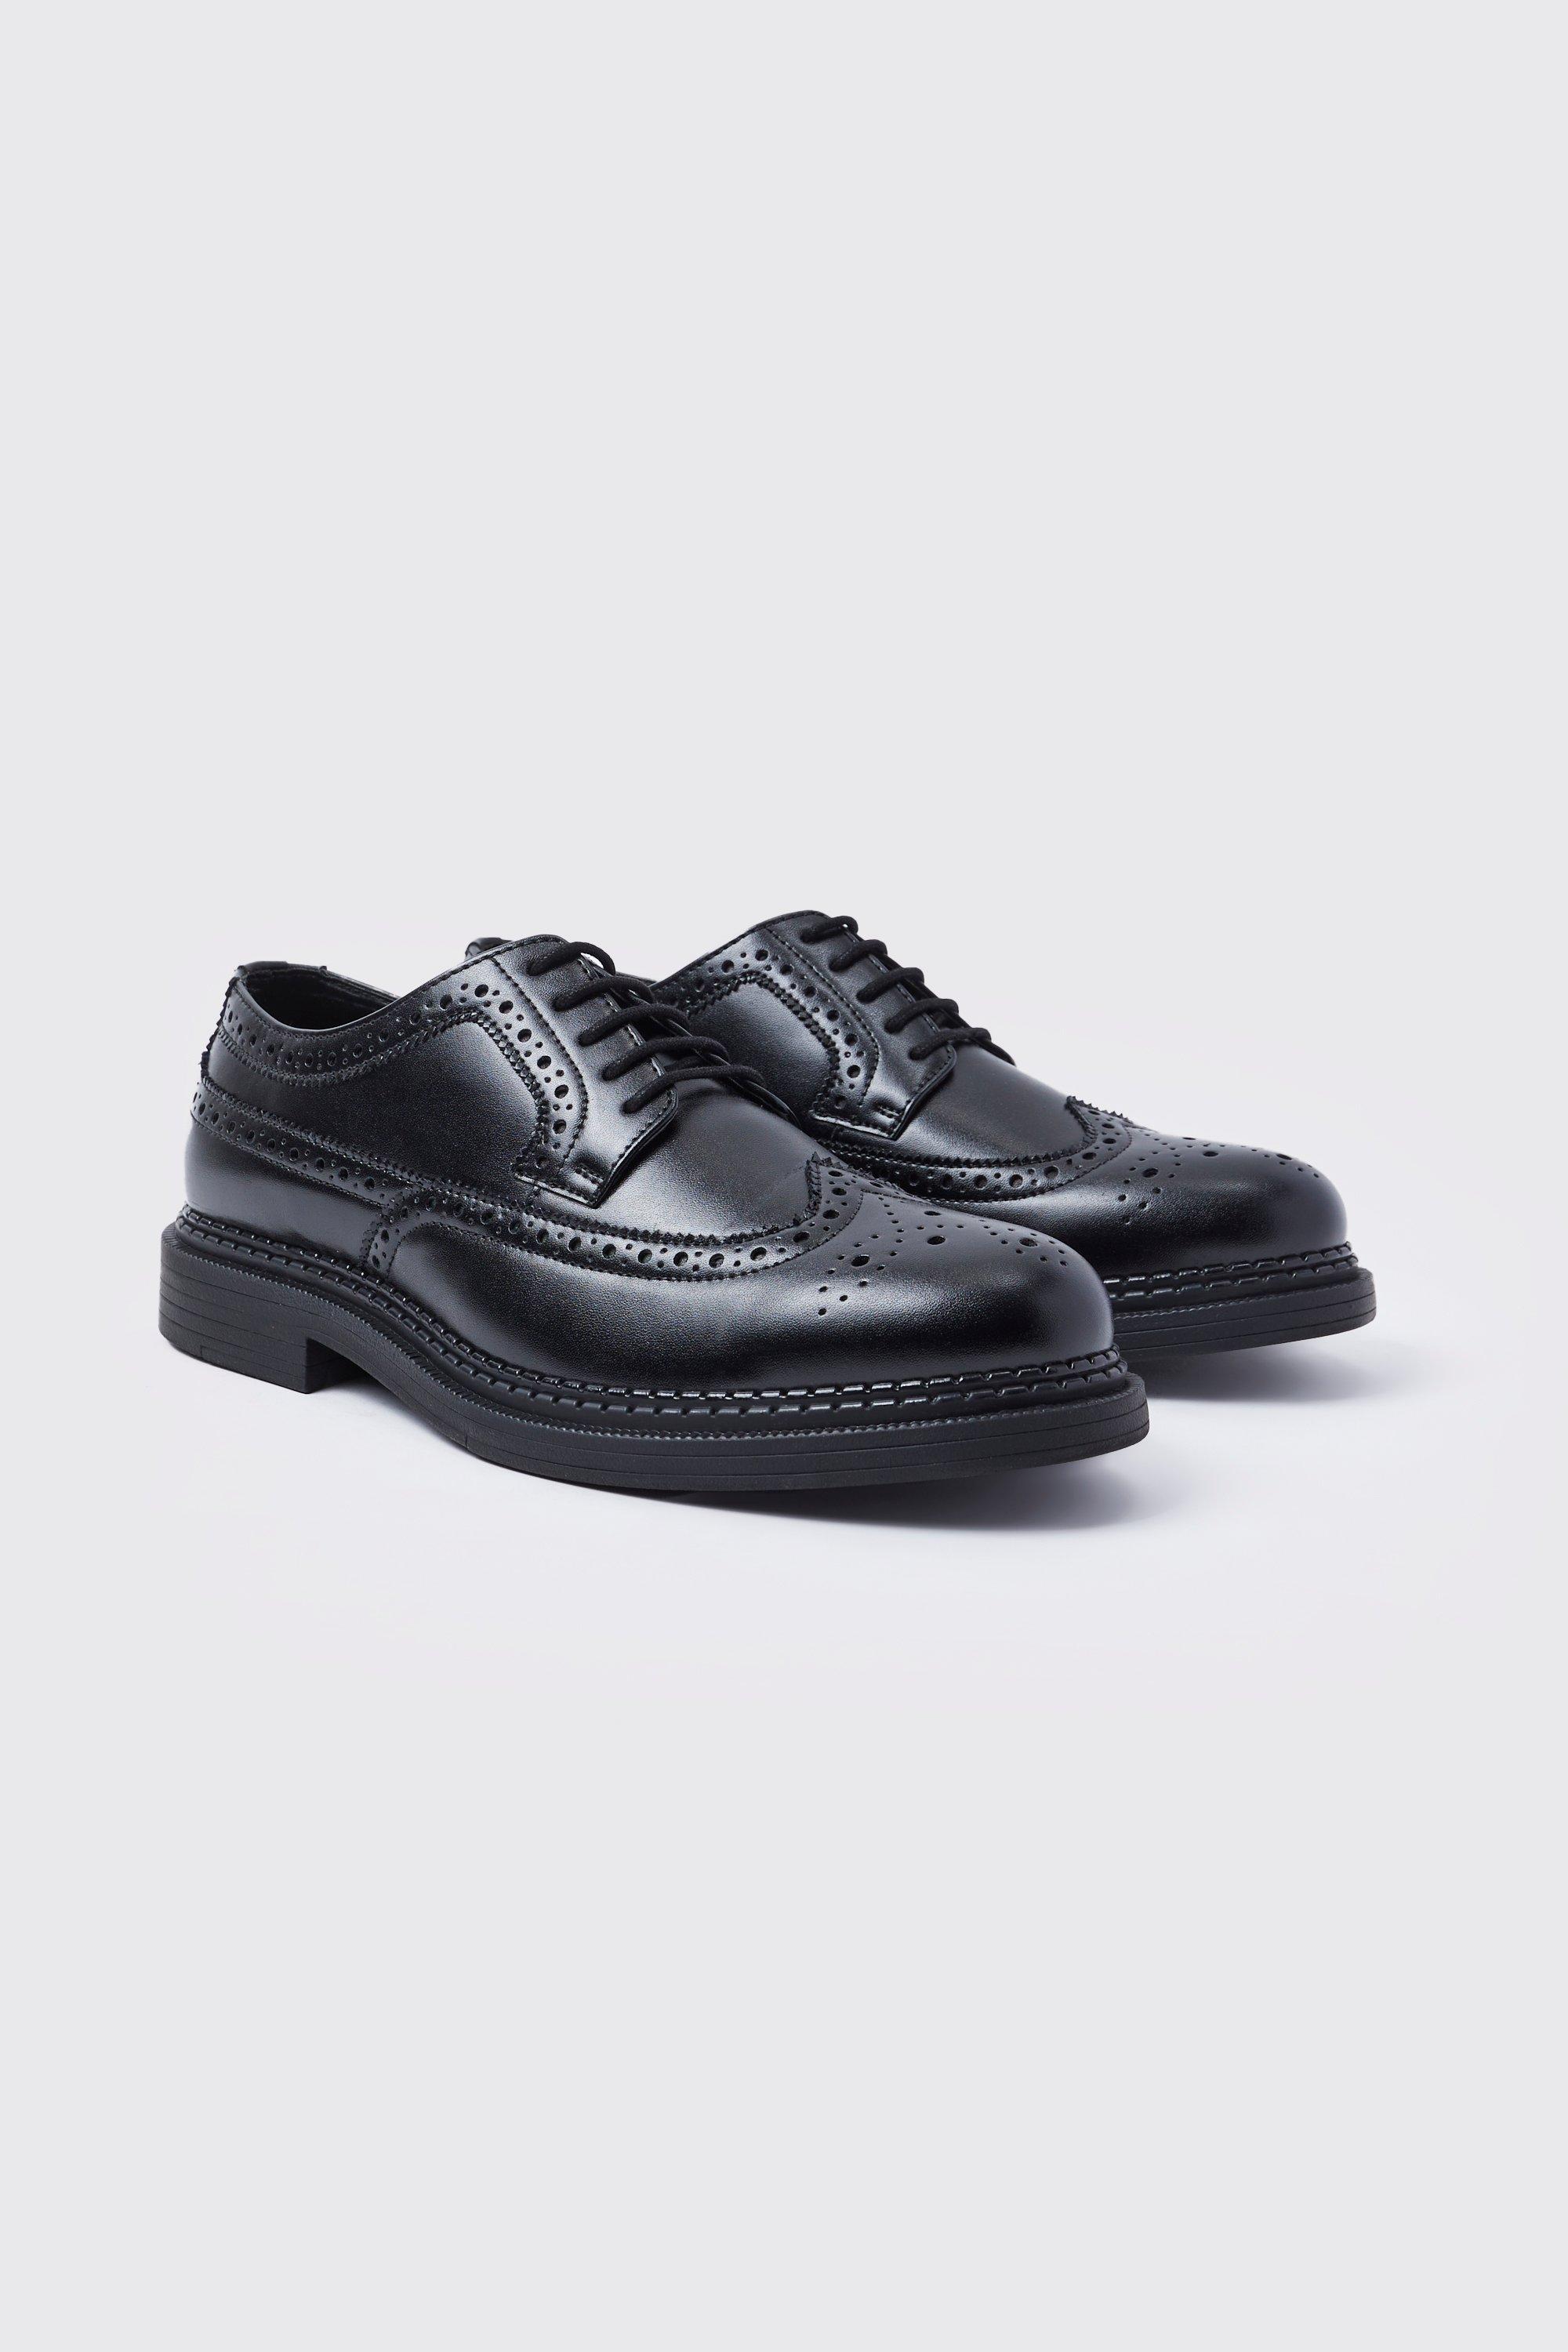 chaussures derbies classiques en simili homme - noir - 46, noir